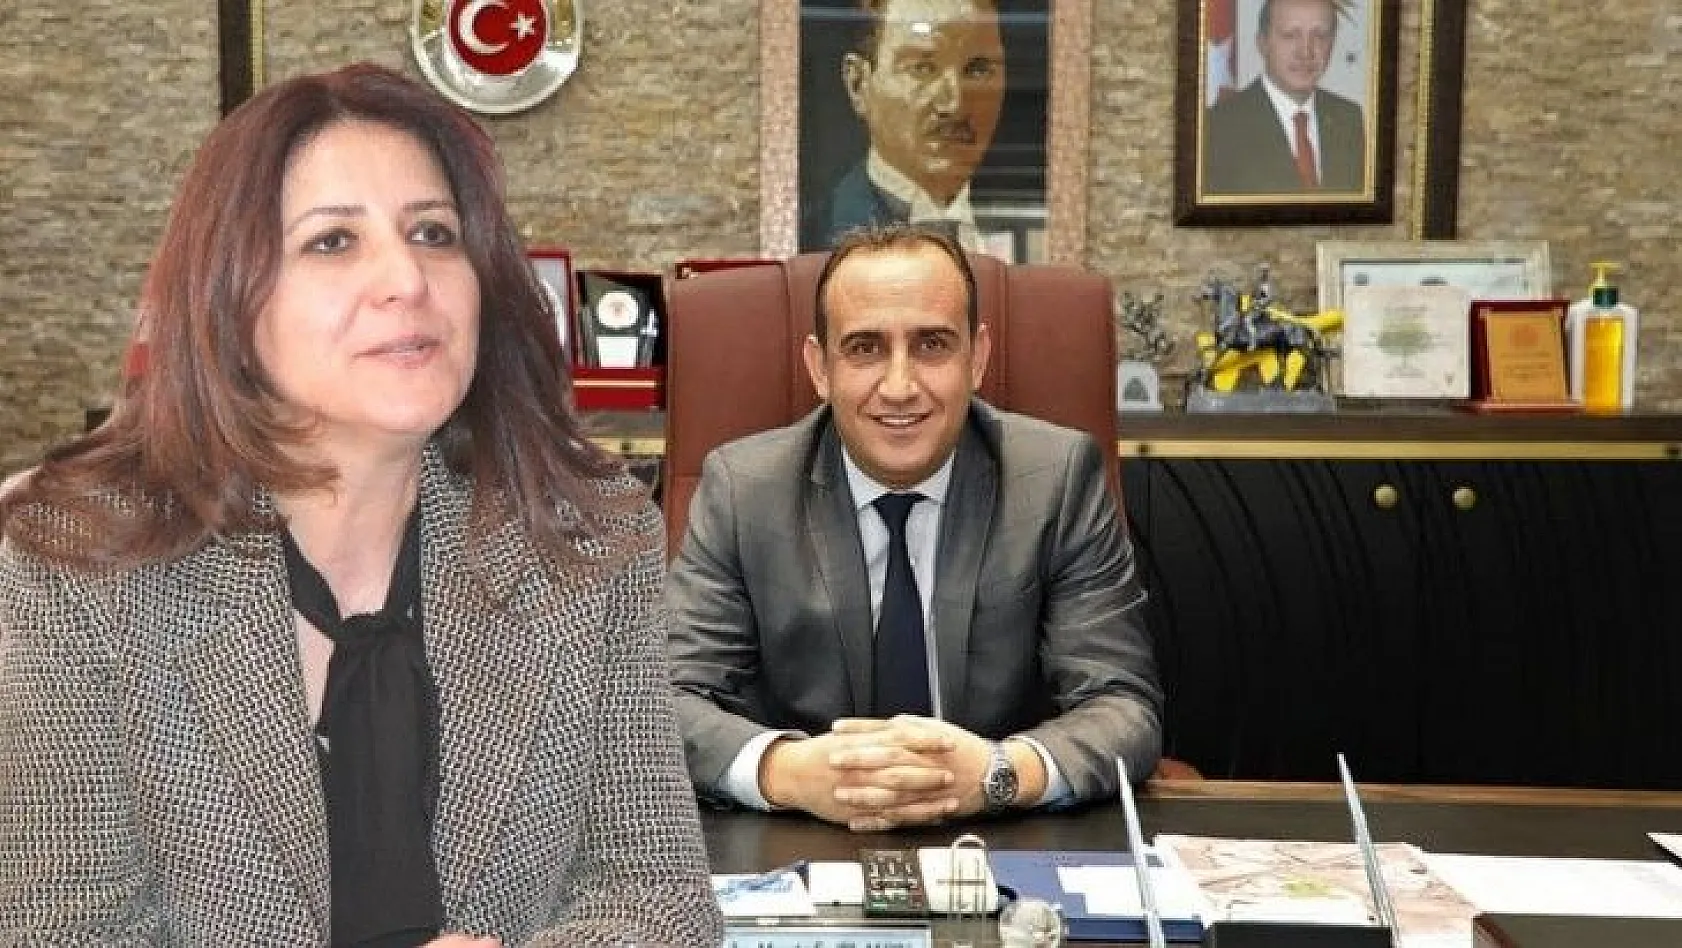 CHP İl Başkanı Özer'den dikkat çeken tepki: 'Ben de AKP'liyim' dedi greyderi aldı!